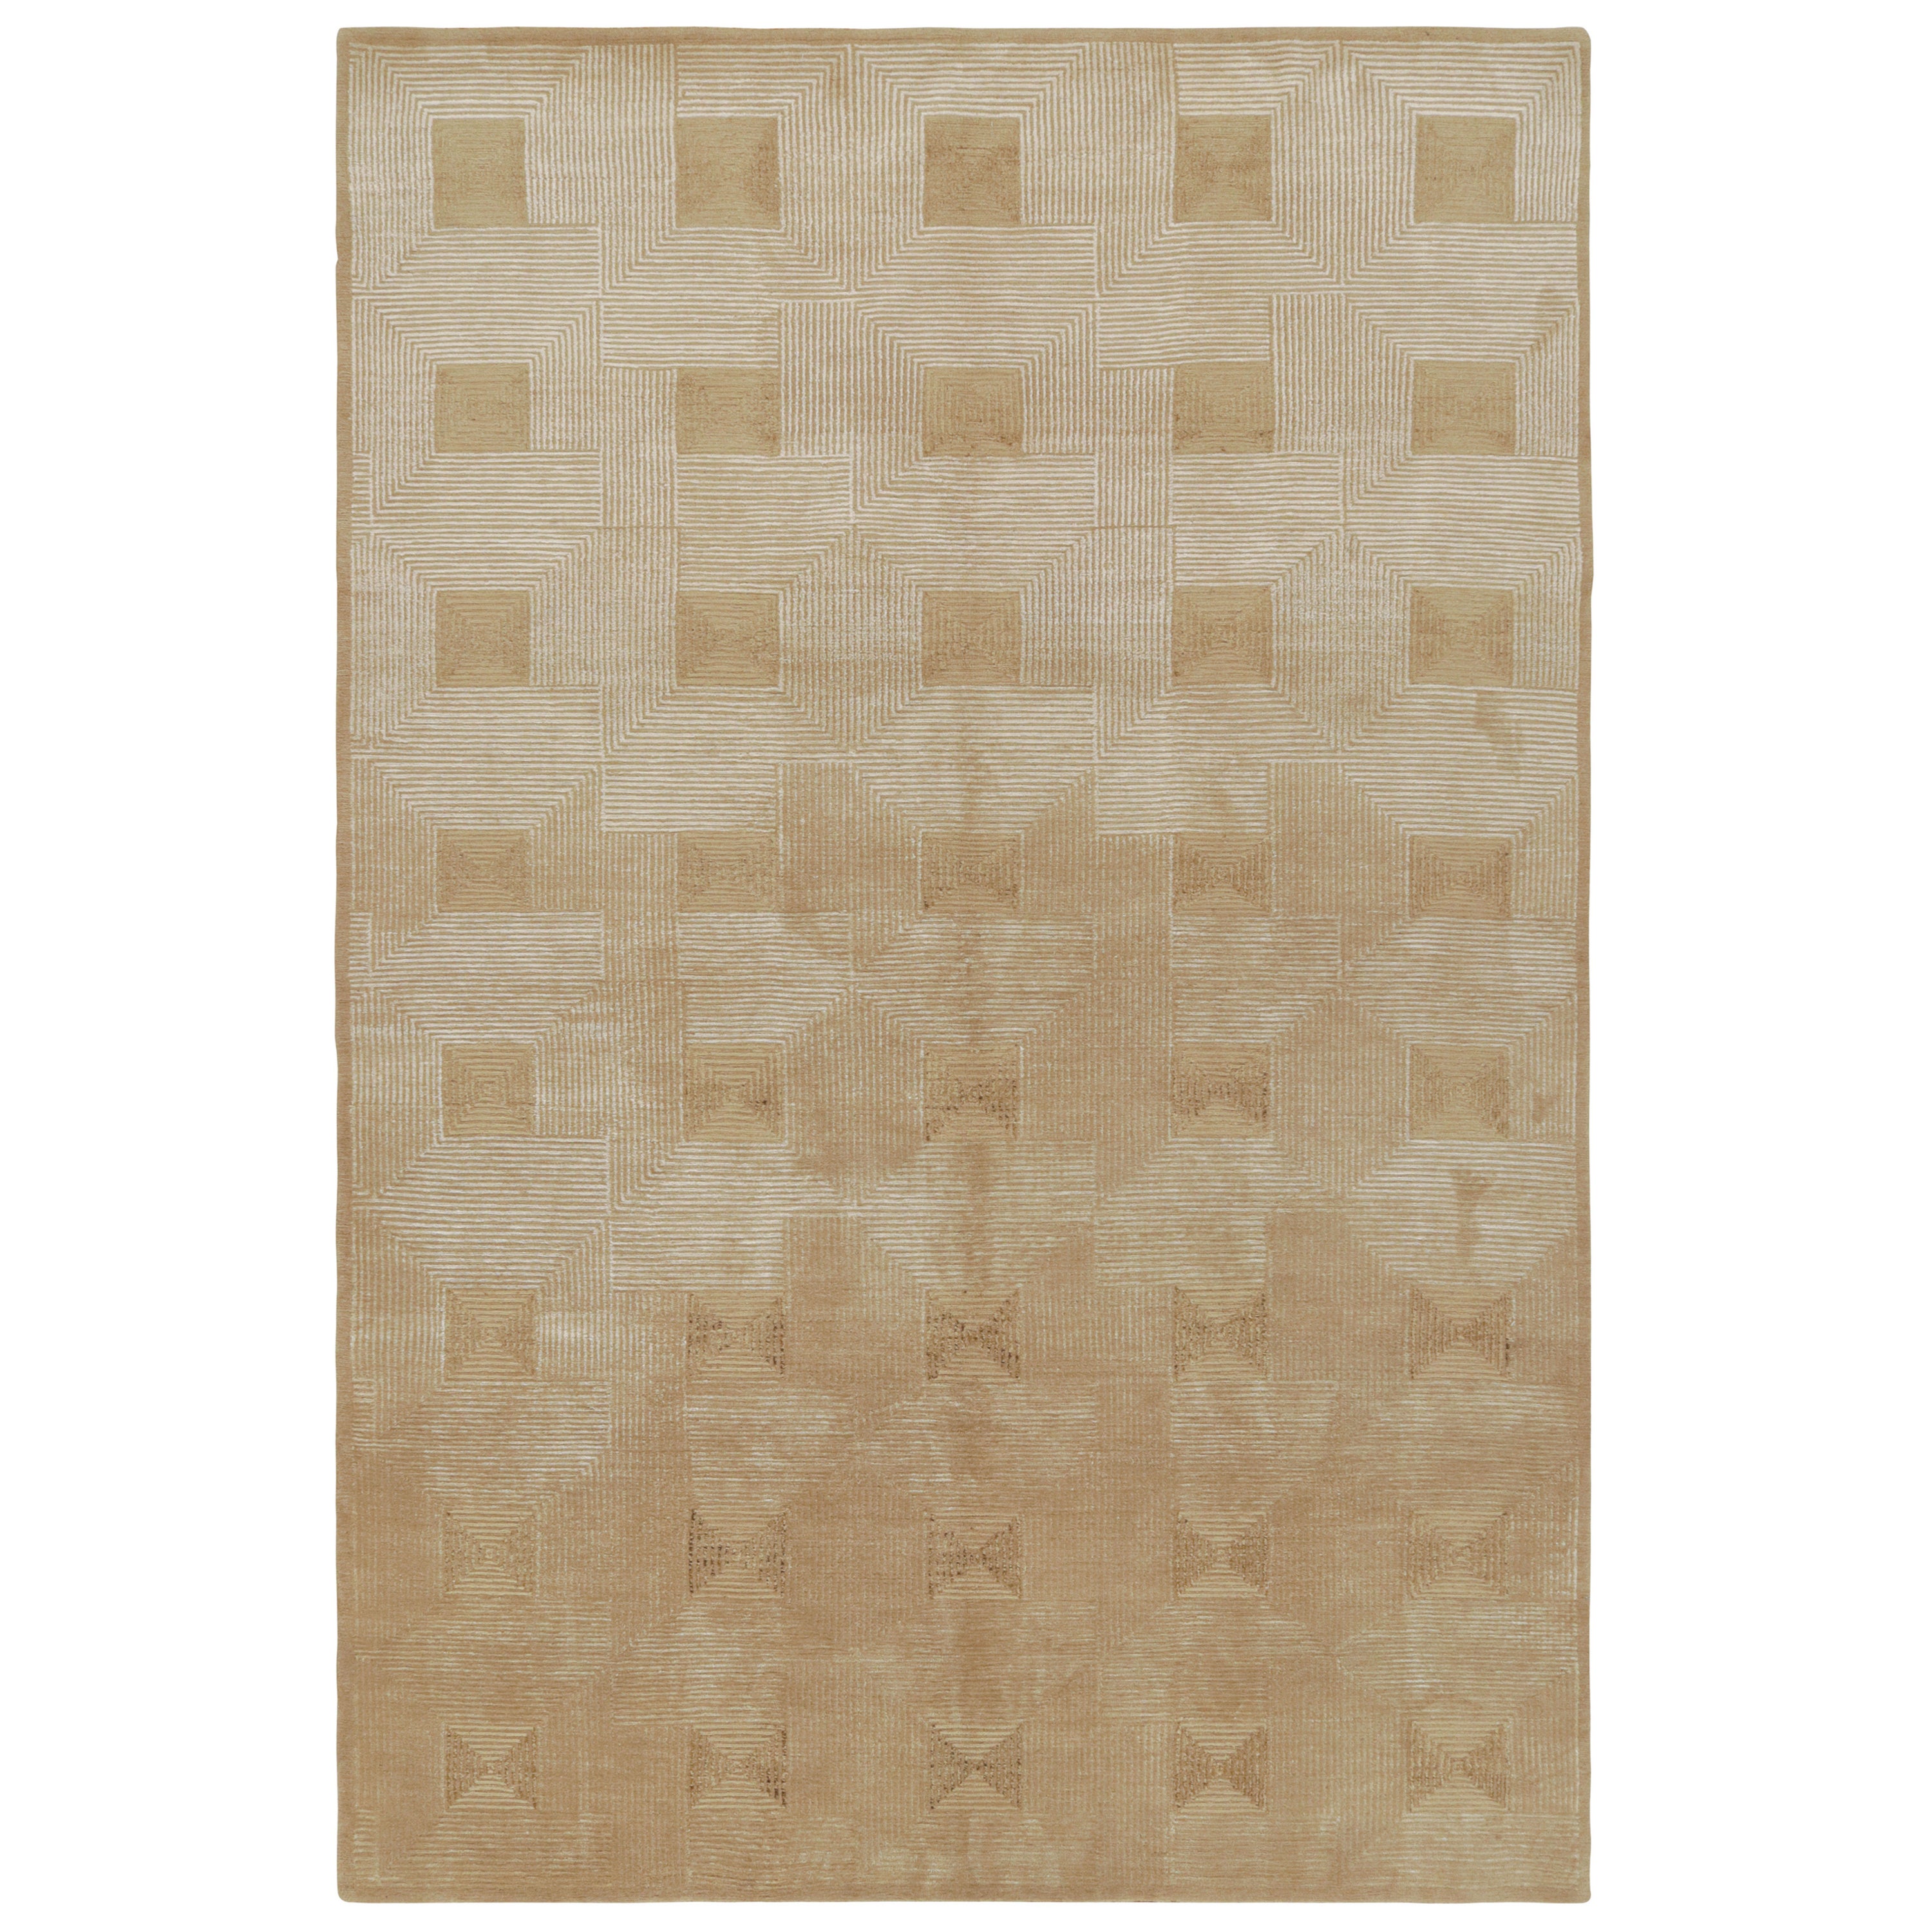 Rug & Kilim's kubistischer Art-Deco-Teppich in Beige-Braun mit geometrischen Mustern